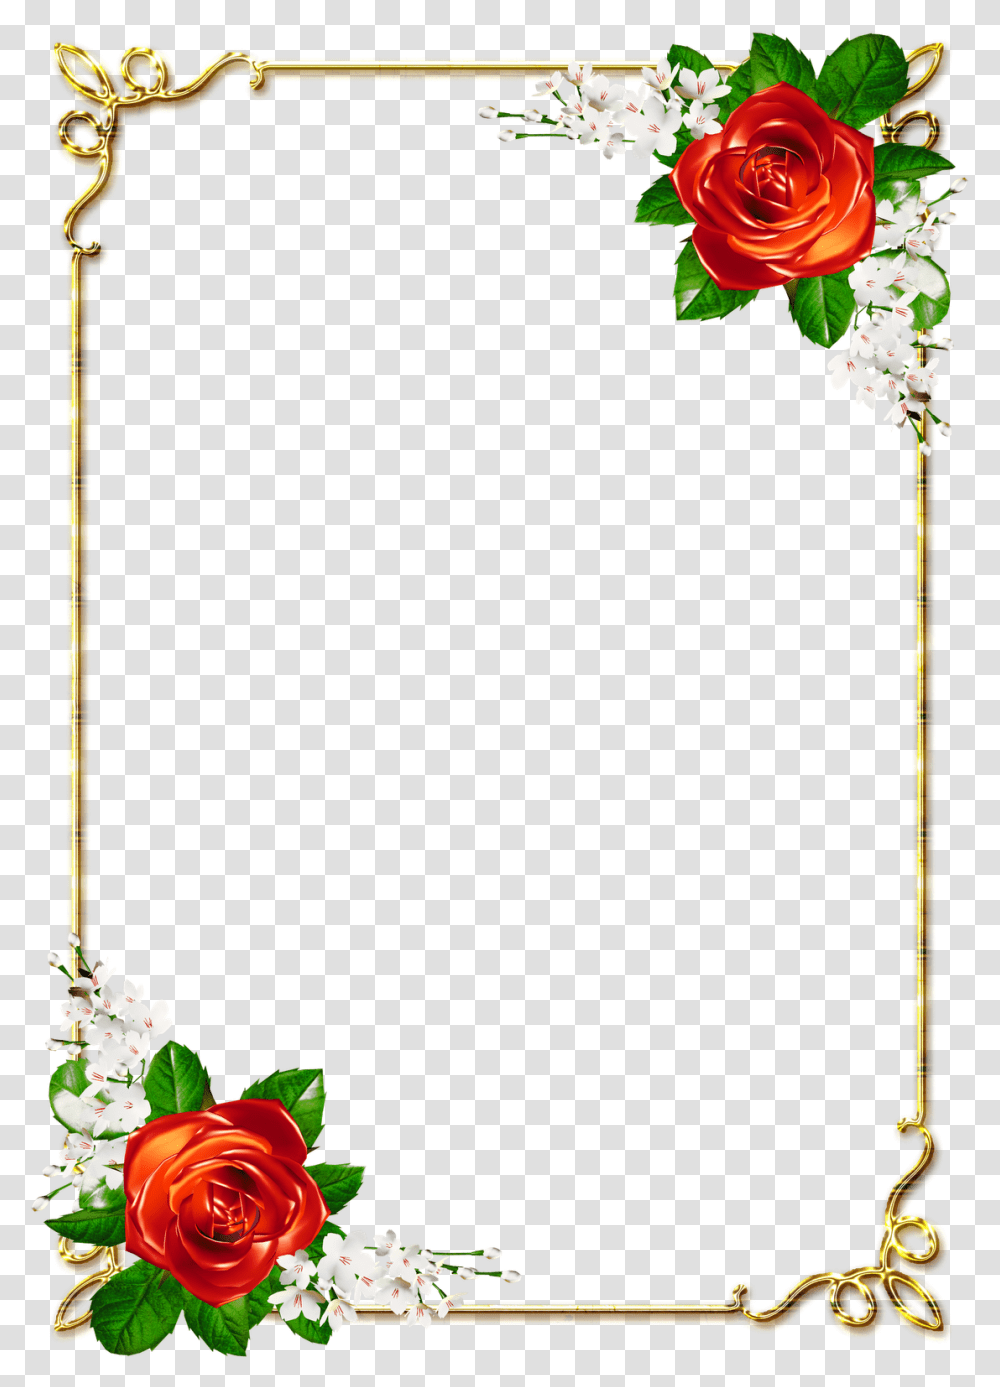 Moldura Dourada Arabescos, Plant, Flower, Blossom, Flower Arrangement Transparent Png